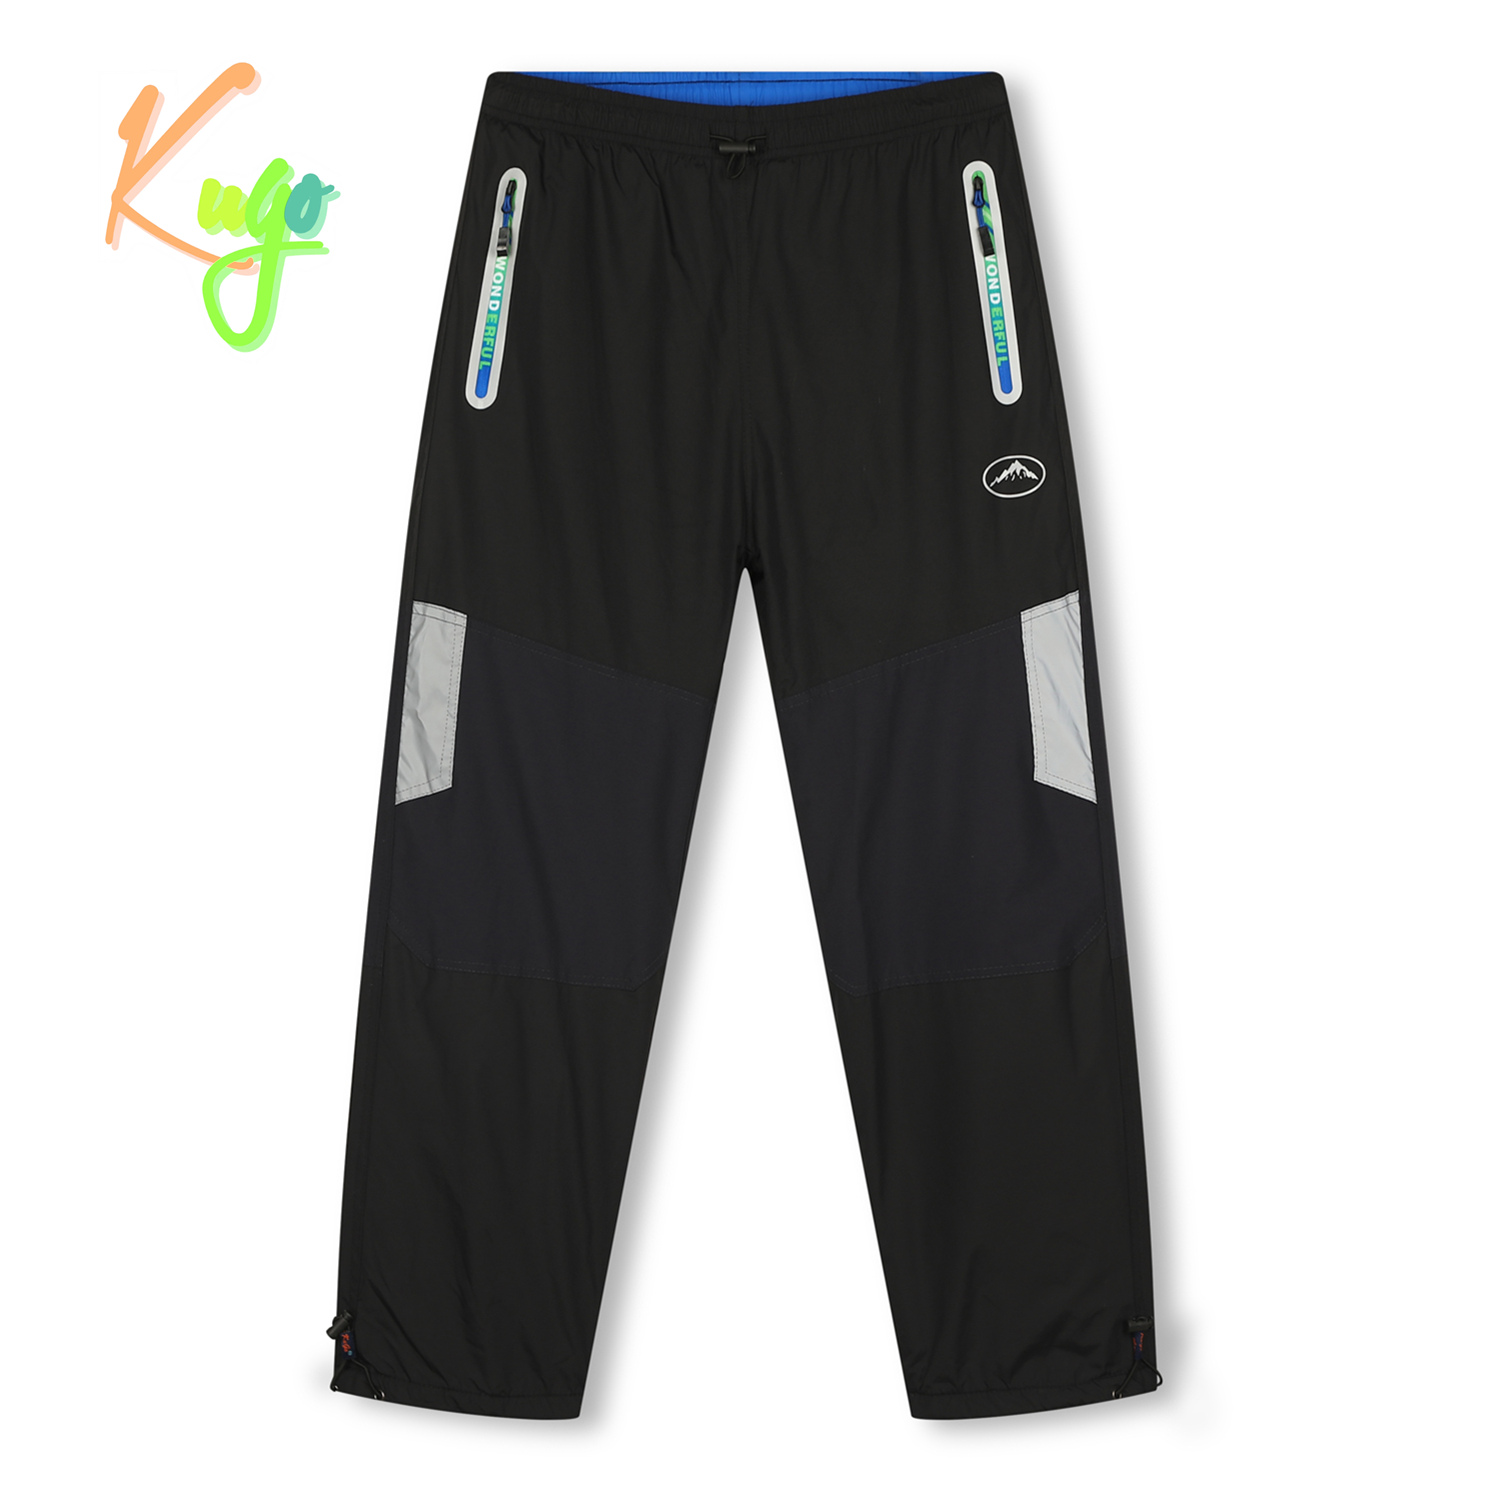 Chlapecké šusťákové kalhoty, zateplené - KUGO DK7136, černá / modrá aplikace Barva: Černá, Velikost: 140